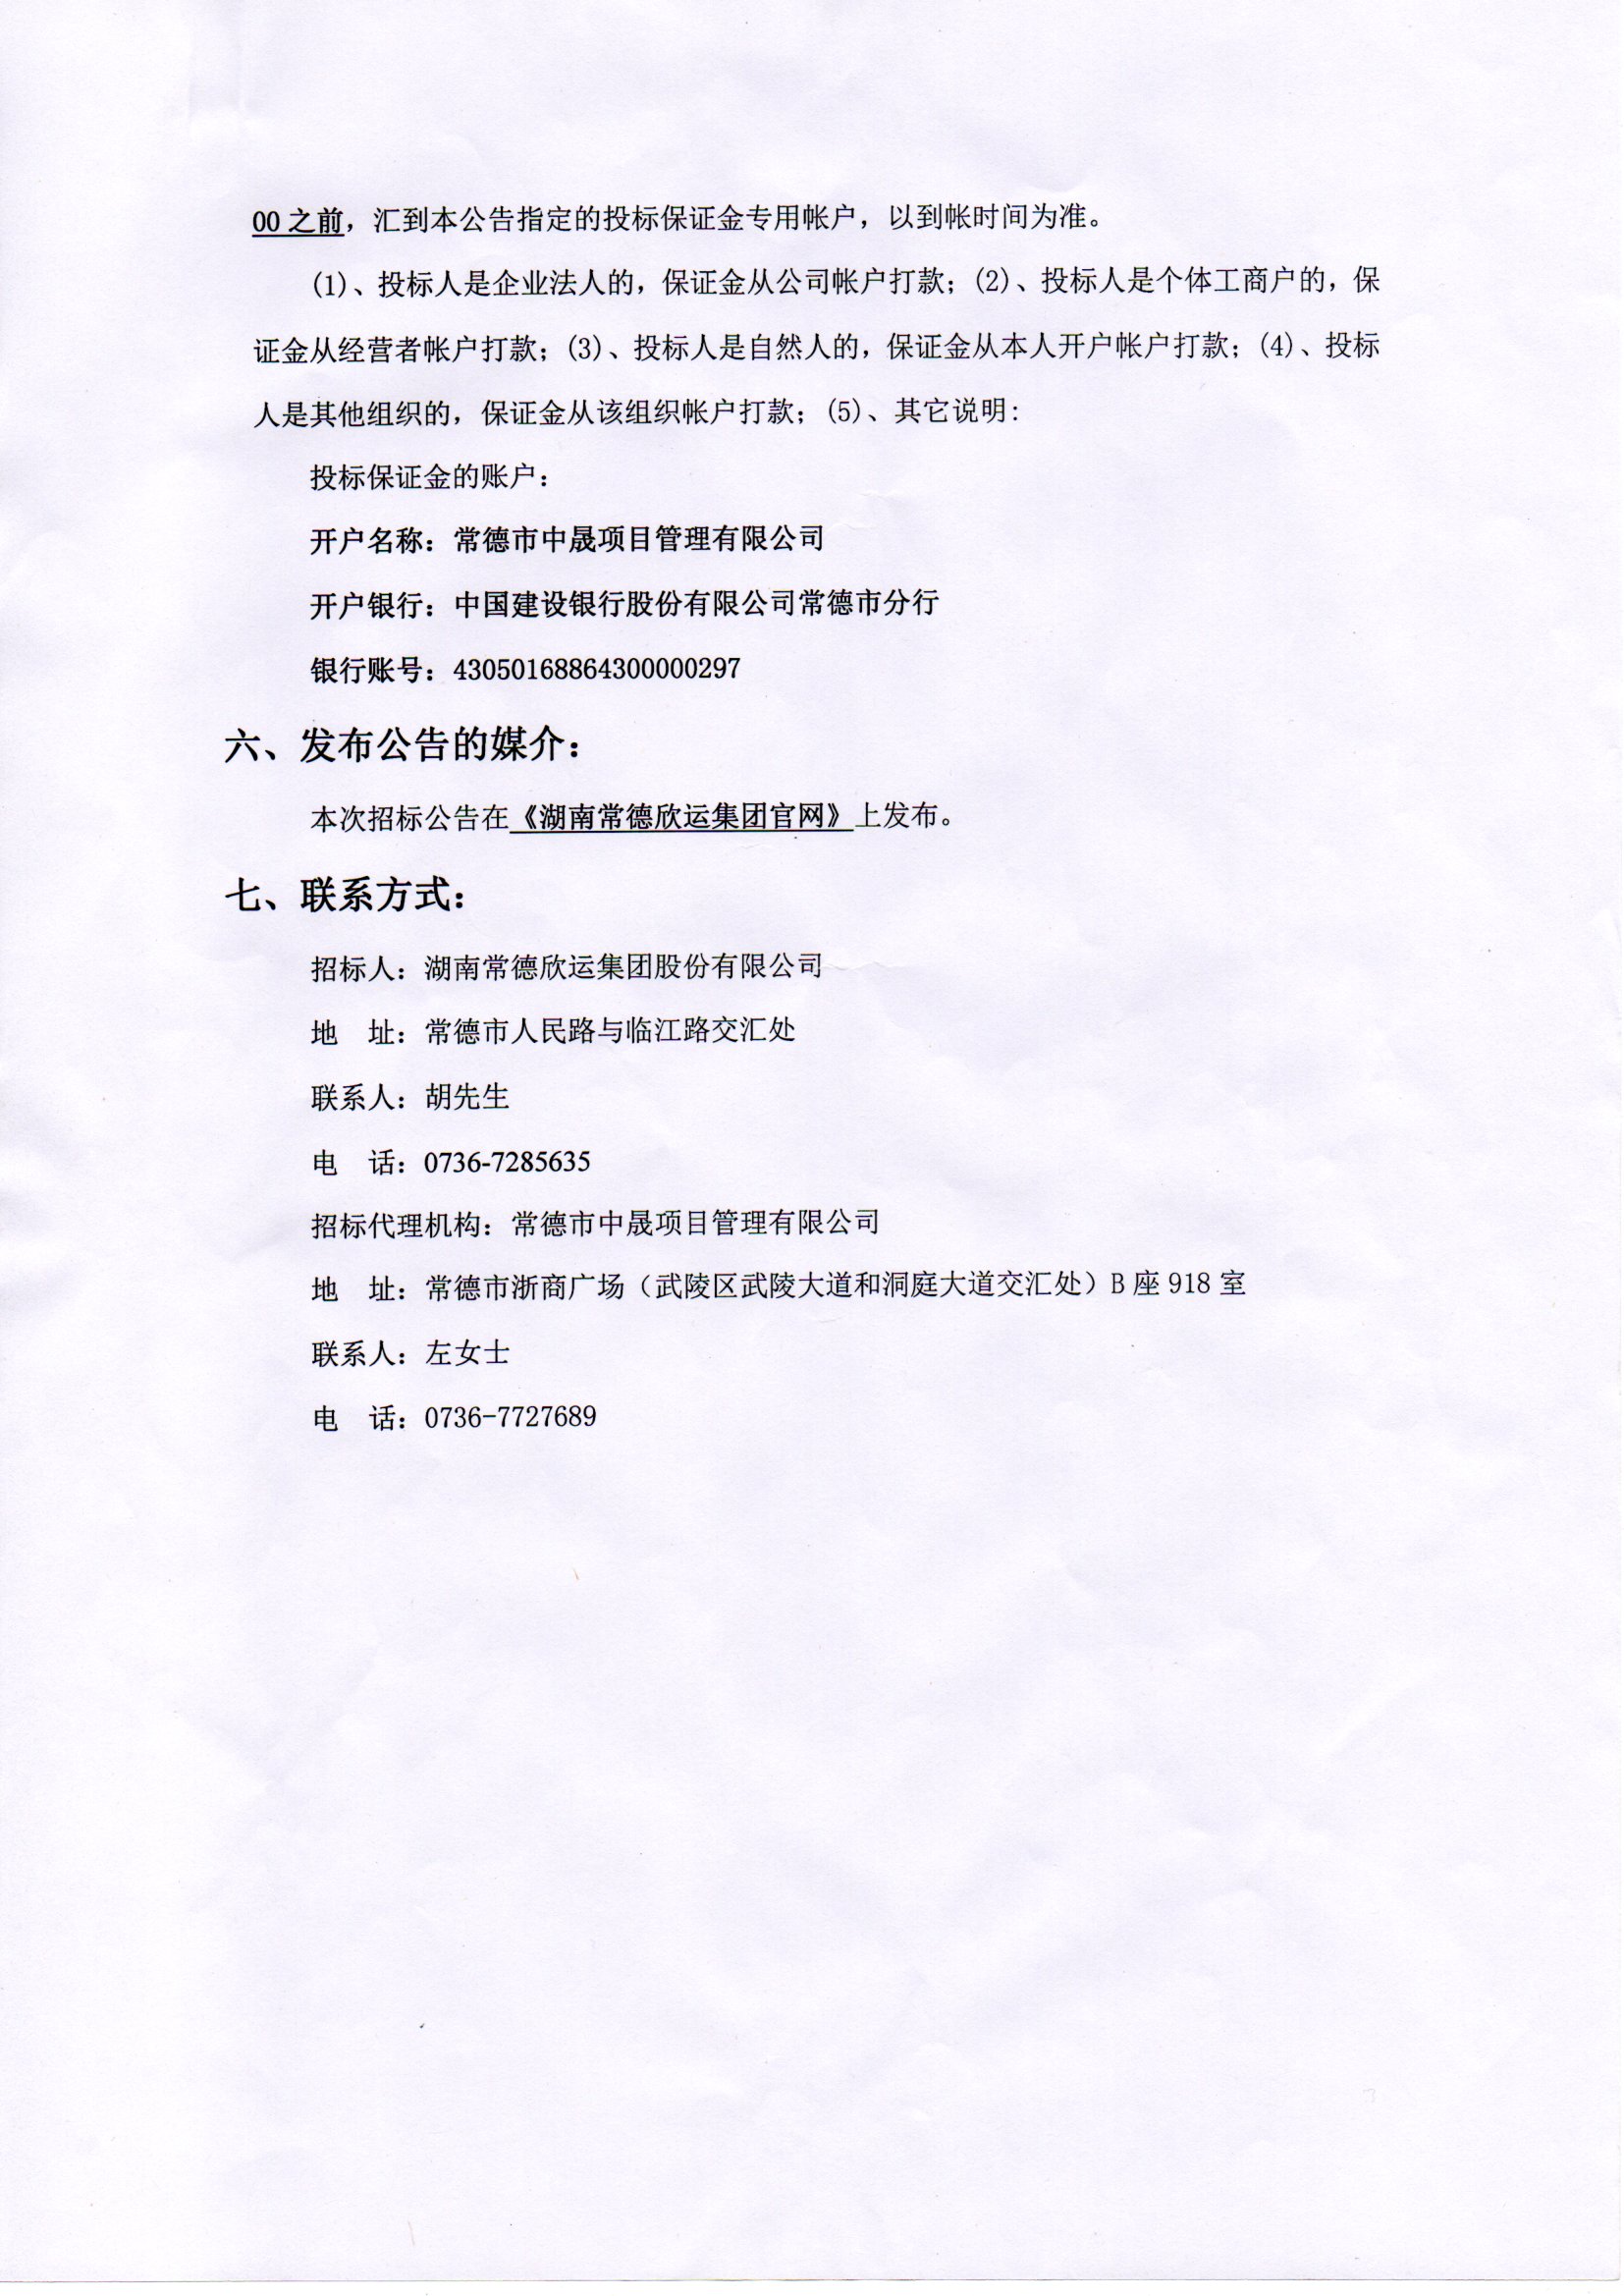 欣运汉寿分公司门面租赁经营权项目招标公告(图2)